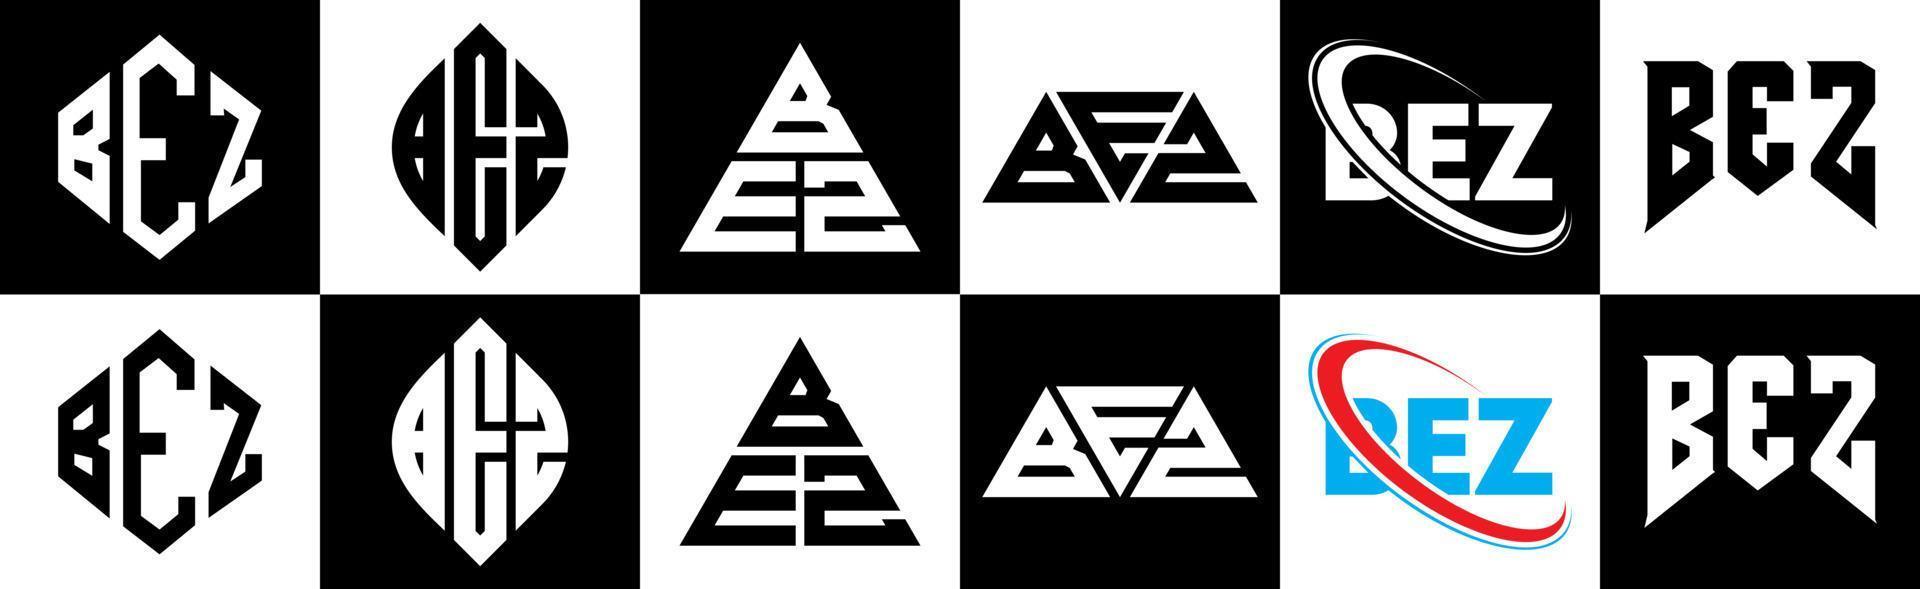 création de logo de lettre bez en six styles. bez polygone, cercle, triangle, hexagone, style plat et simple avec logo de lettre de variation de couleur noir et blanc dans un plan de travail. bez logo minimaliste et classique vecteur